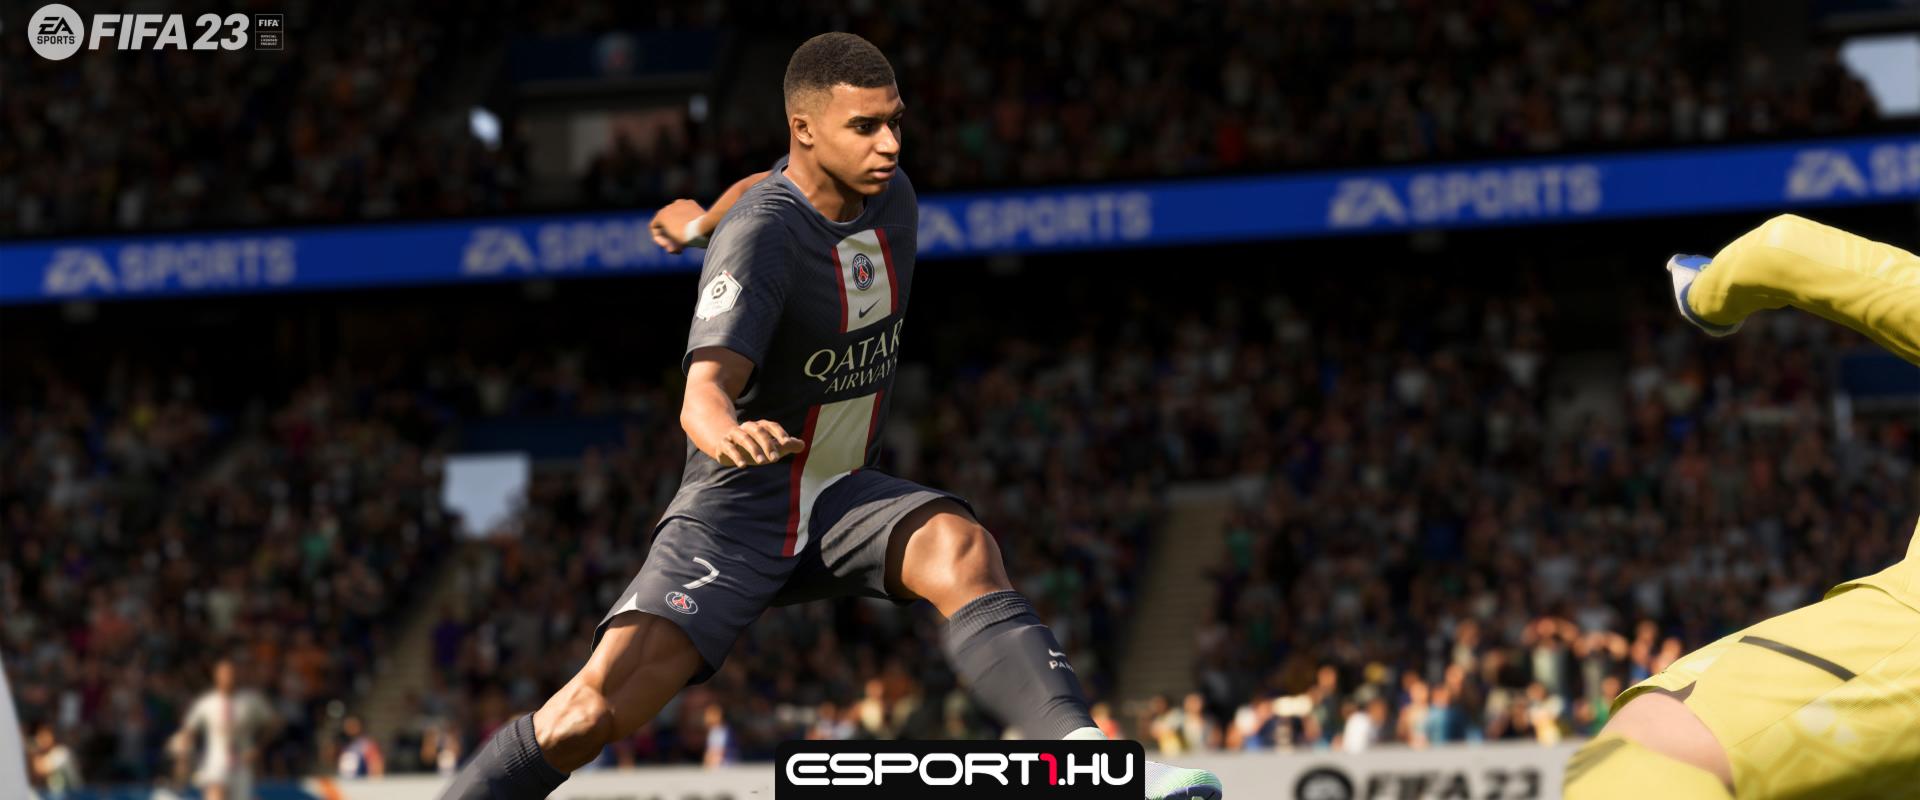 FIFA 23: Megérkezett az első frissítés a játékmenet javítása érdekében